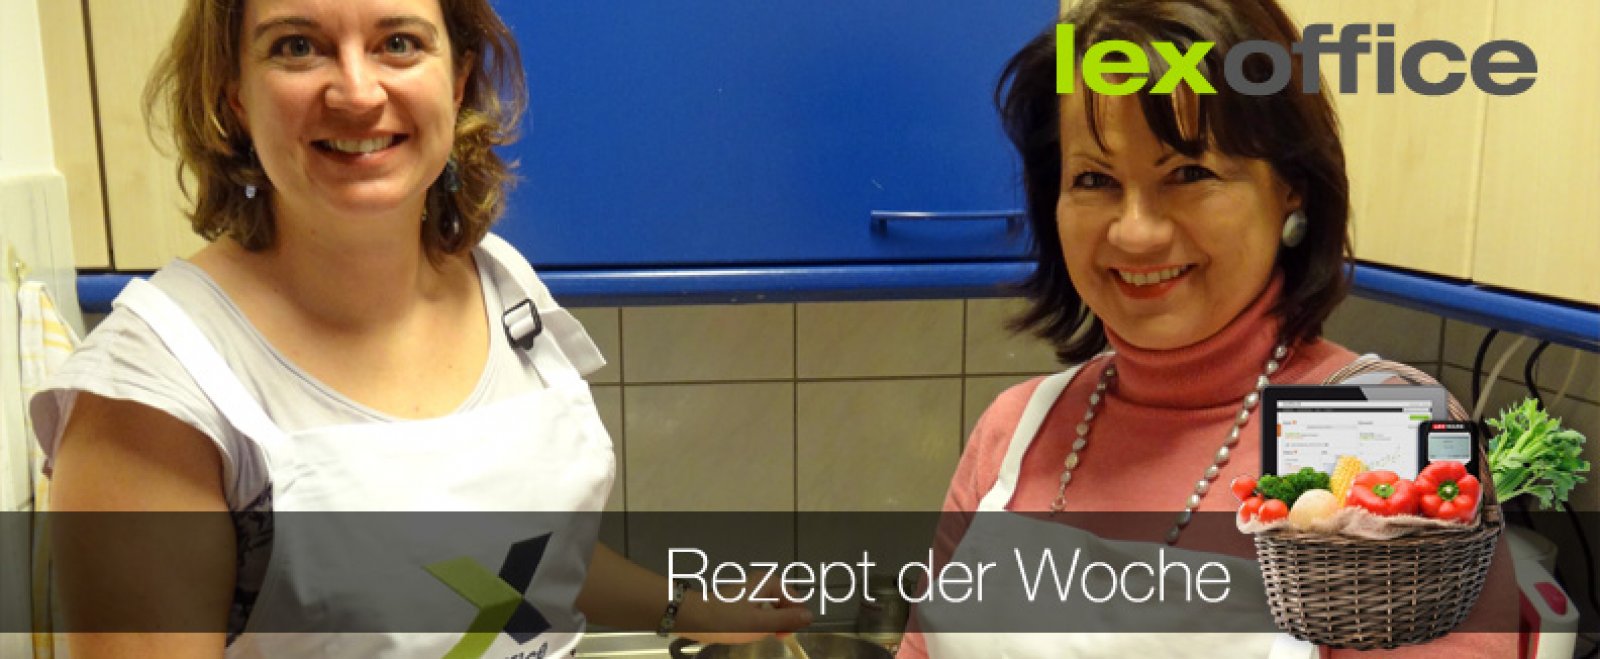 Rezept der Woche: Elke von Harsdorf und Friederike Floth von PR von Harsdorf aus dem lexoffice-Team